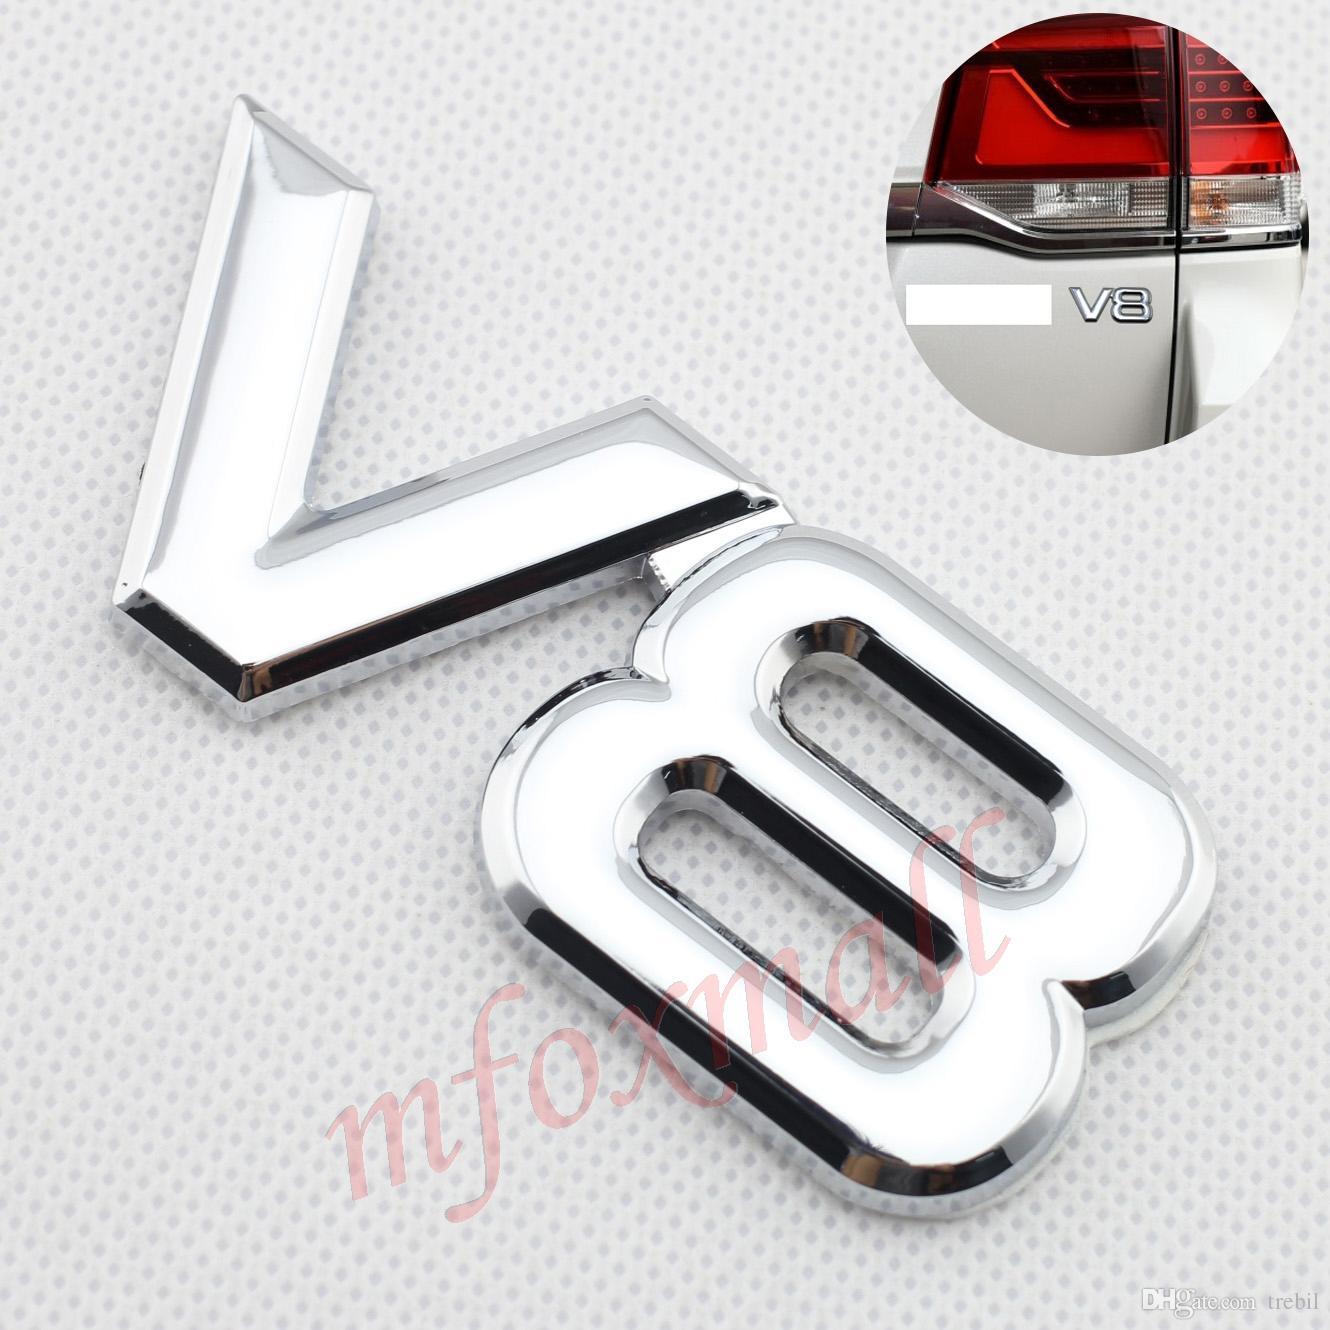 V8 Logo - Universal Parts 3D Chrome Metal V8 Logo Emblem Badge Trim Auto